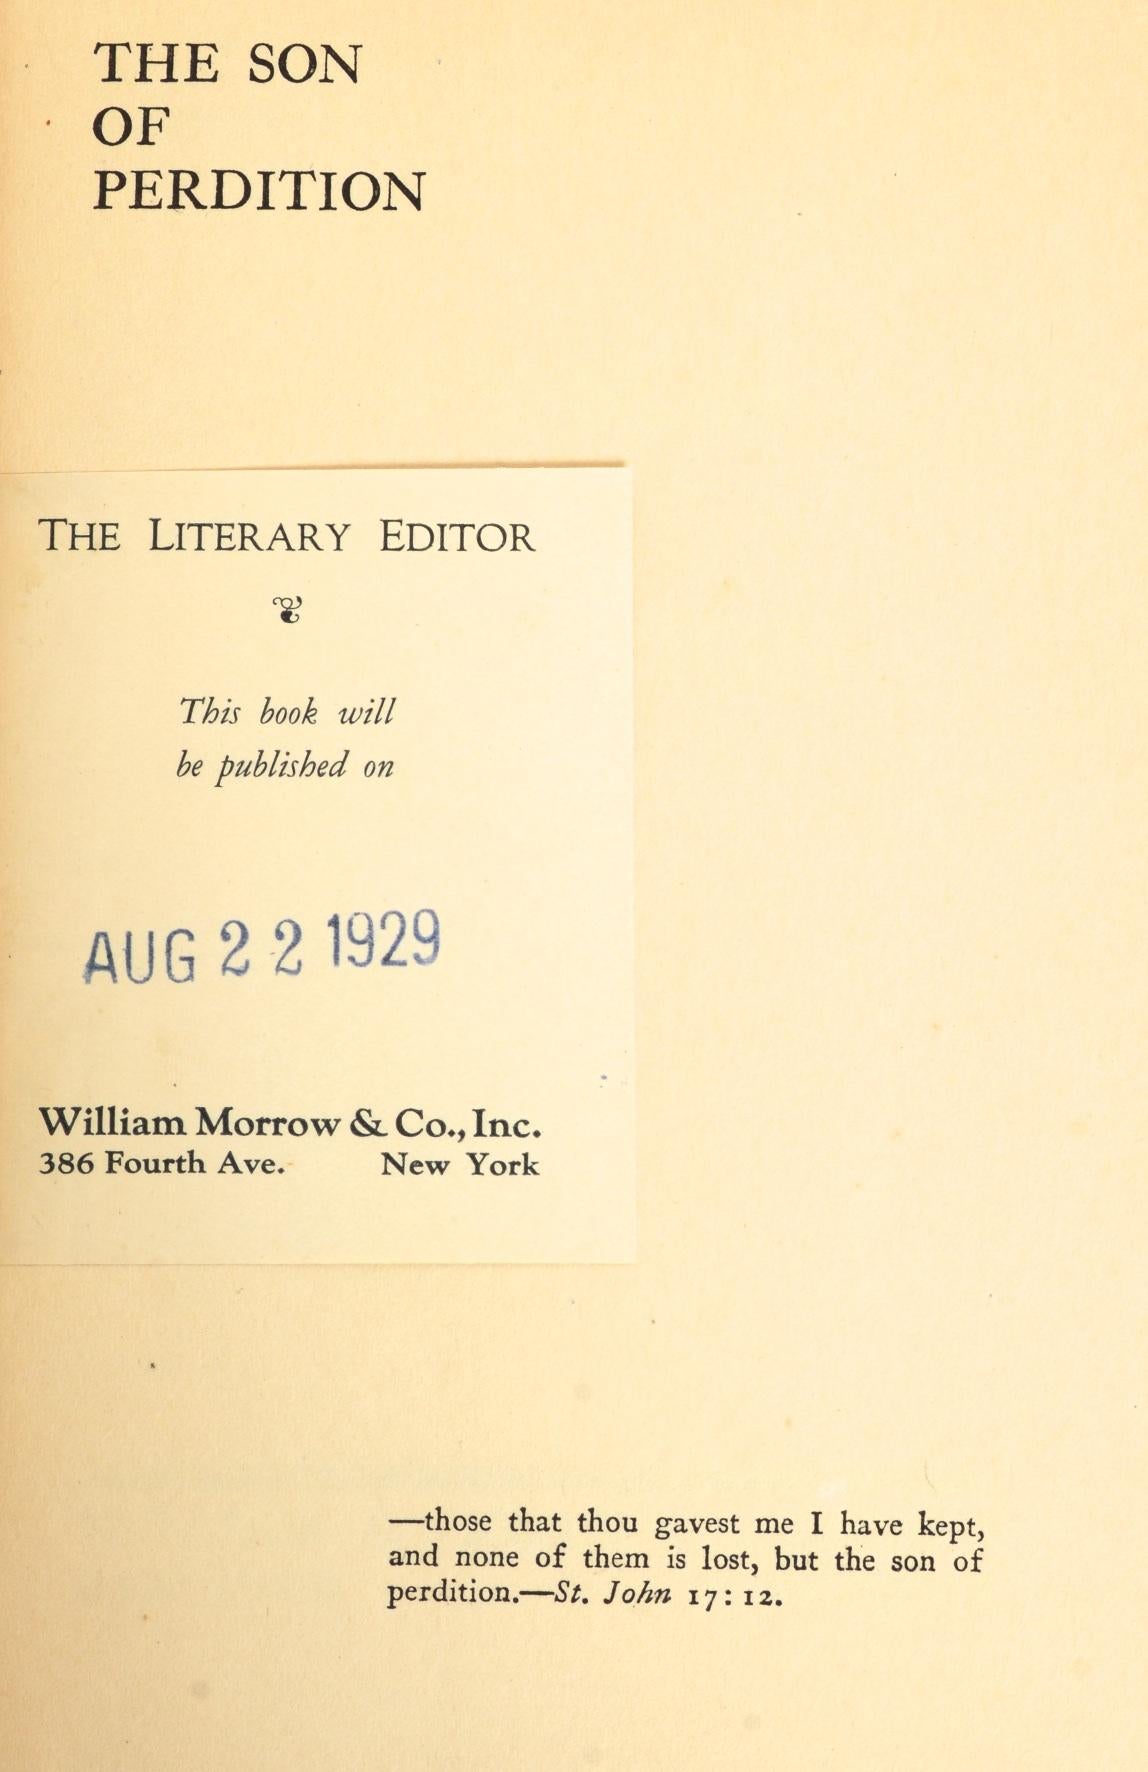 Le fils de la perdition par James Gould Cozzens. William Morrow & Company, Inc., New York, NY, 1929. Rare 1st Ed Pre-Publication review copy hardcover, no dust jacket. 